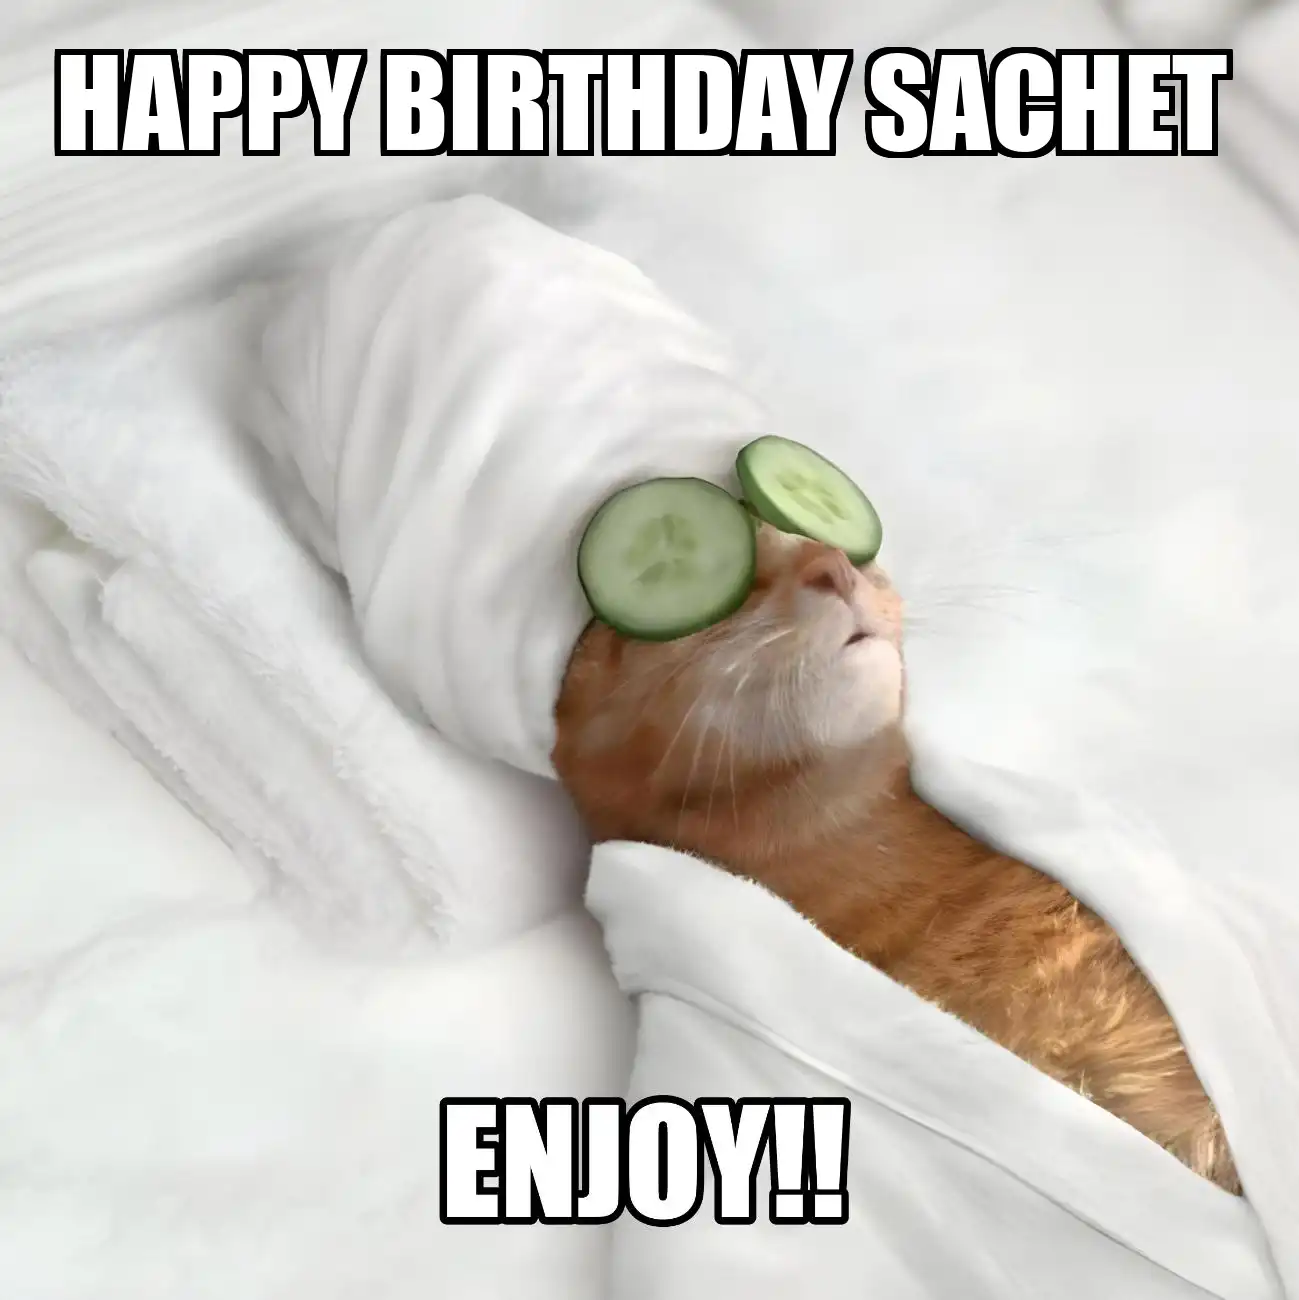 Happy Birthday Sachet Enjoy Cat Meme